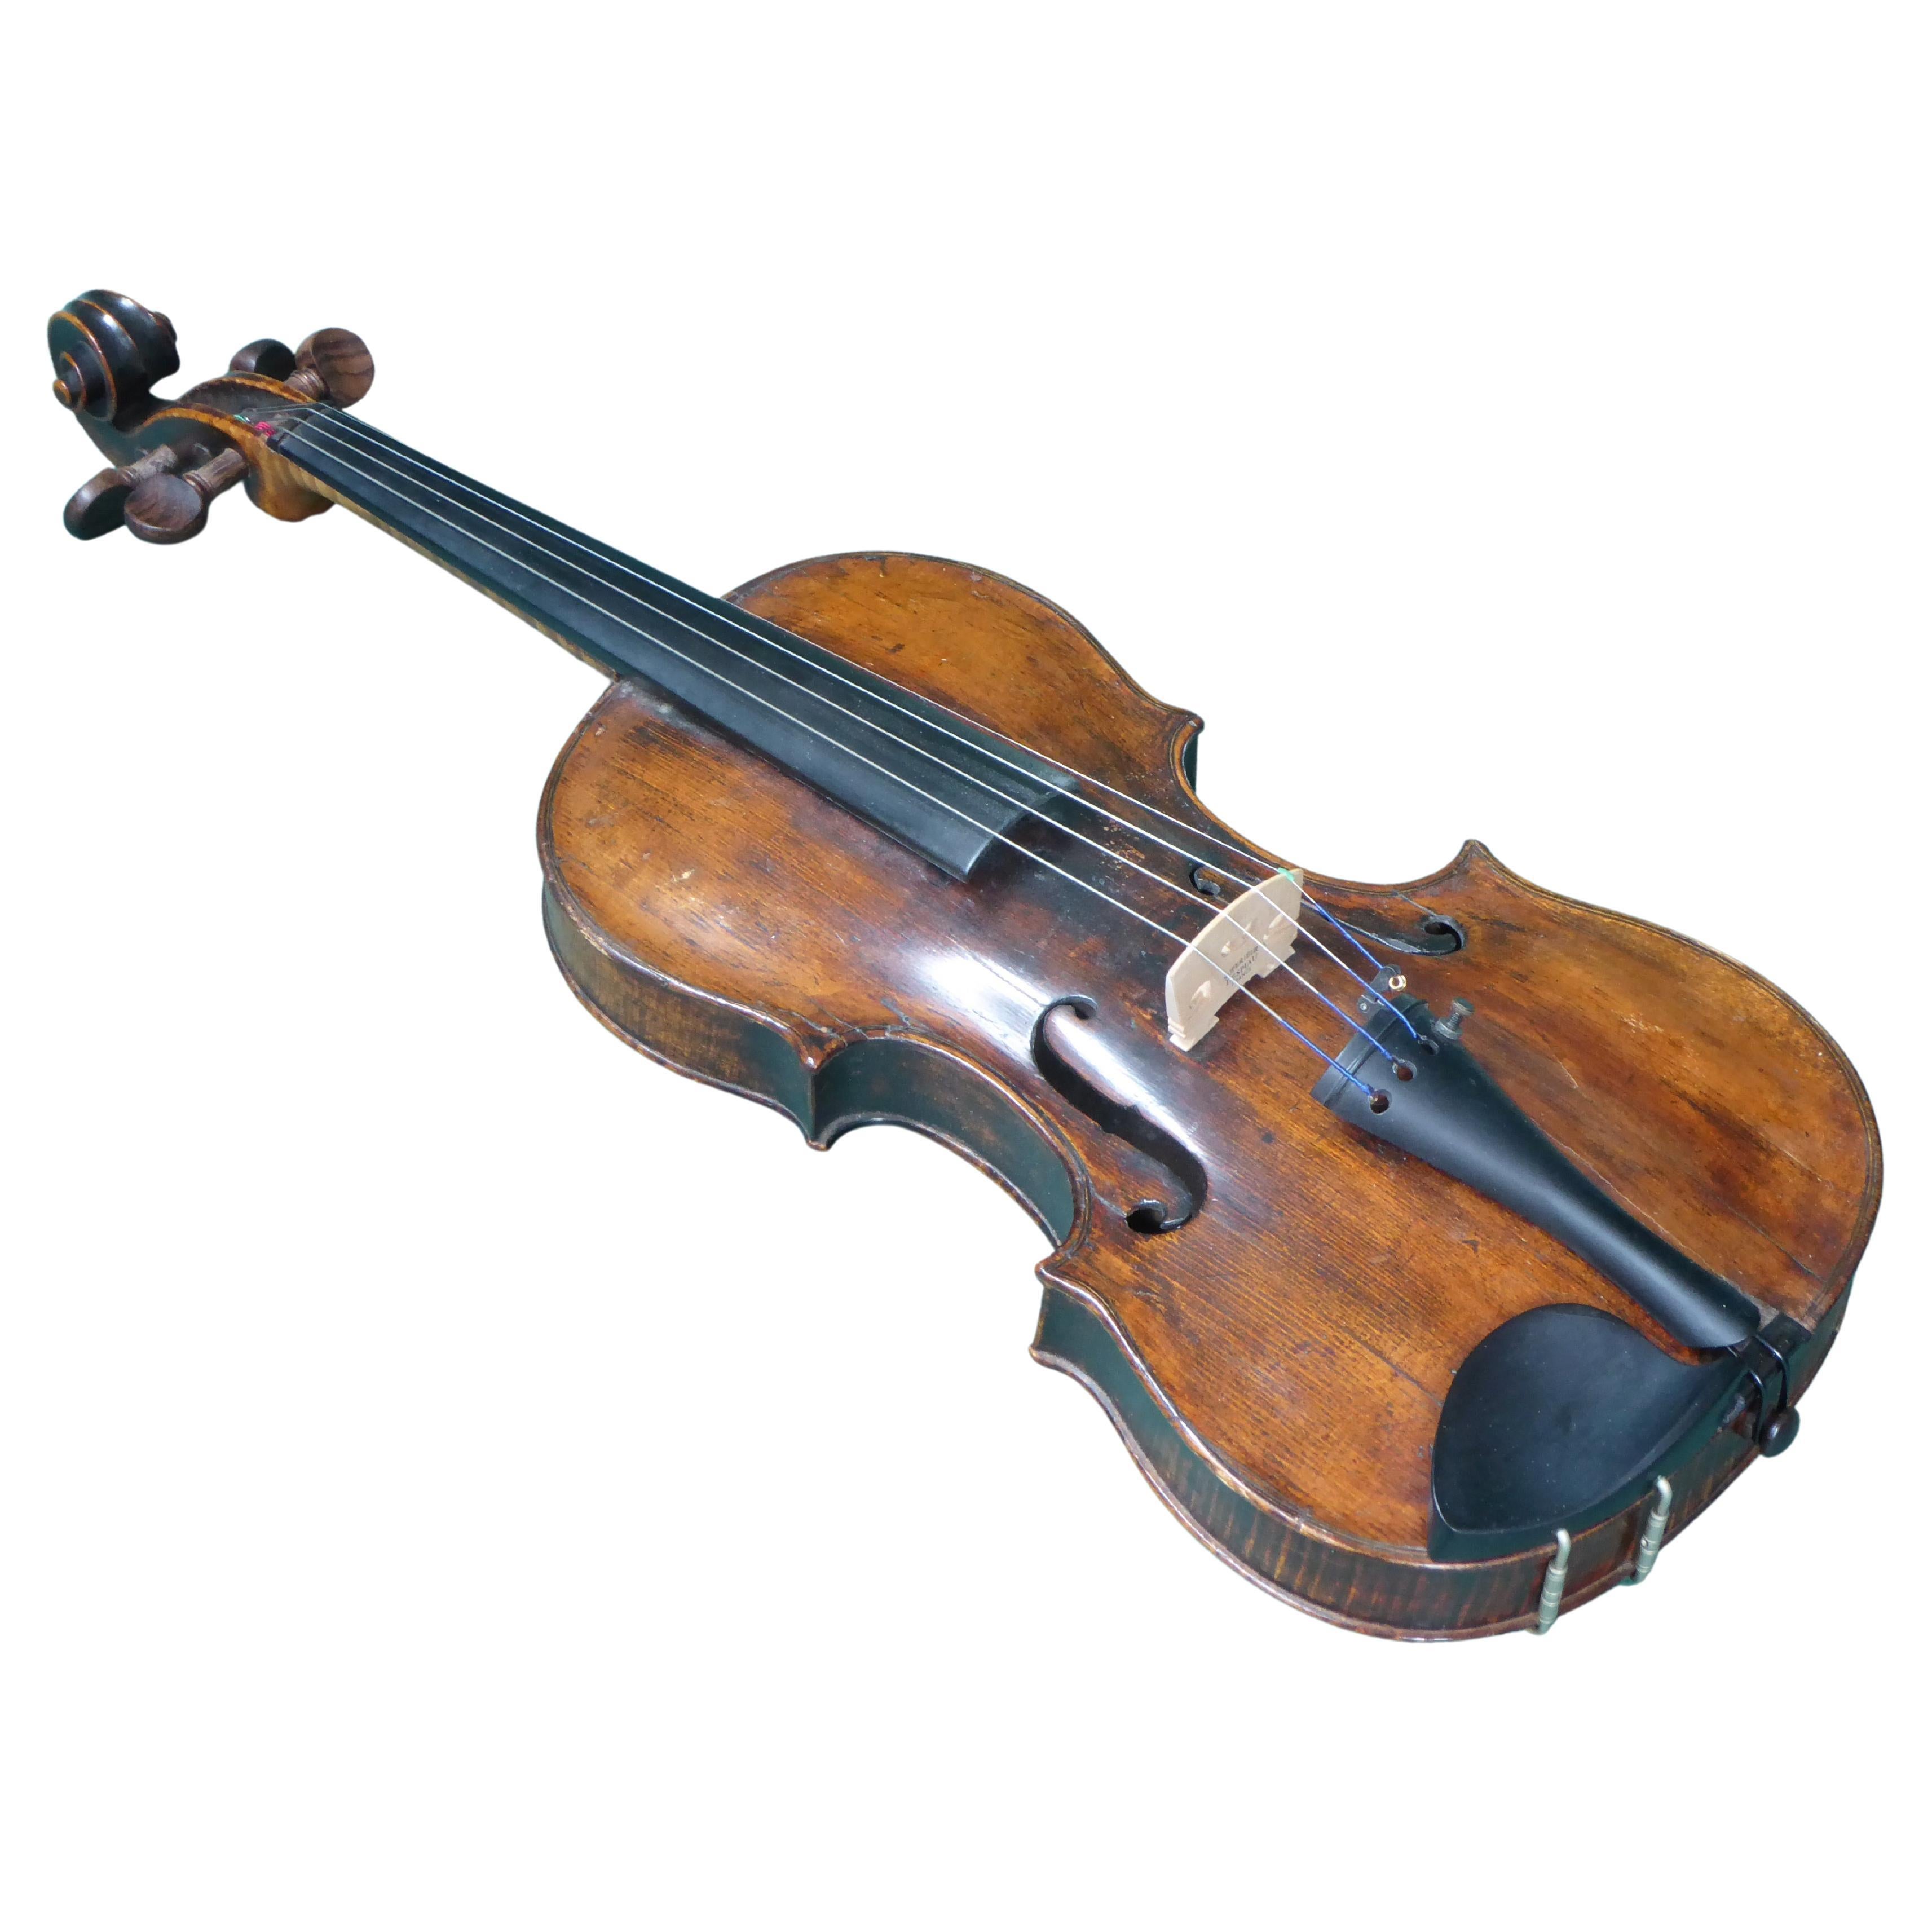 17th. Jahrhundert-Violine